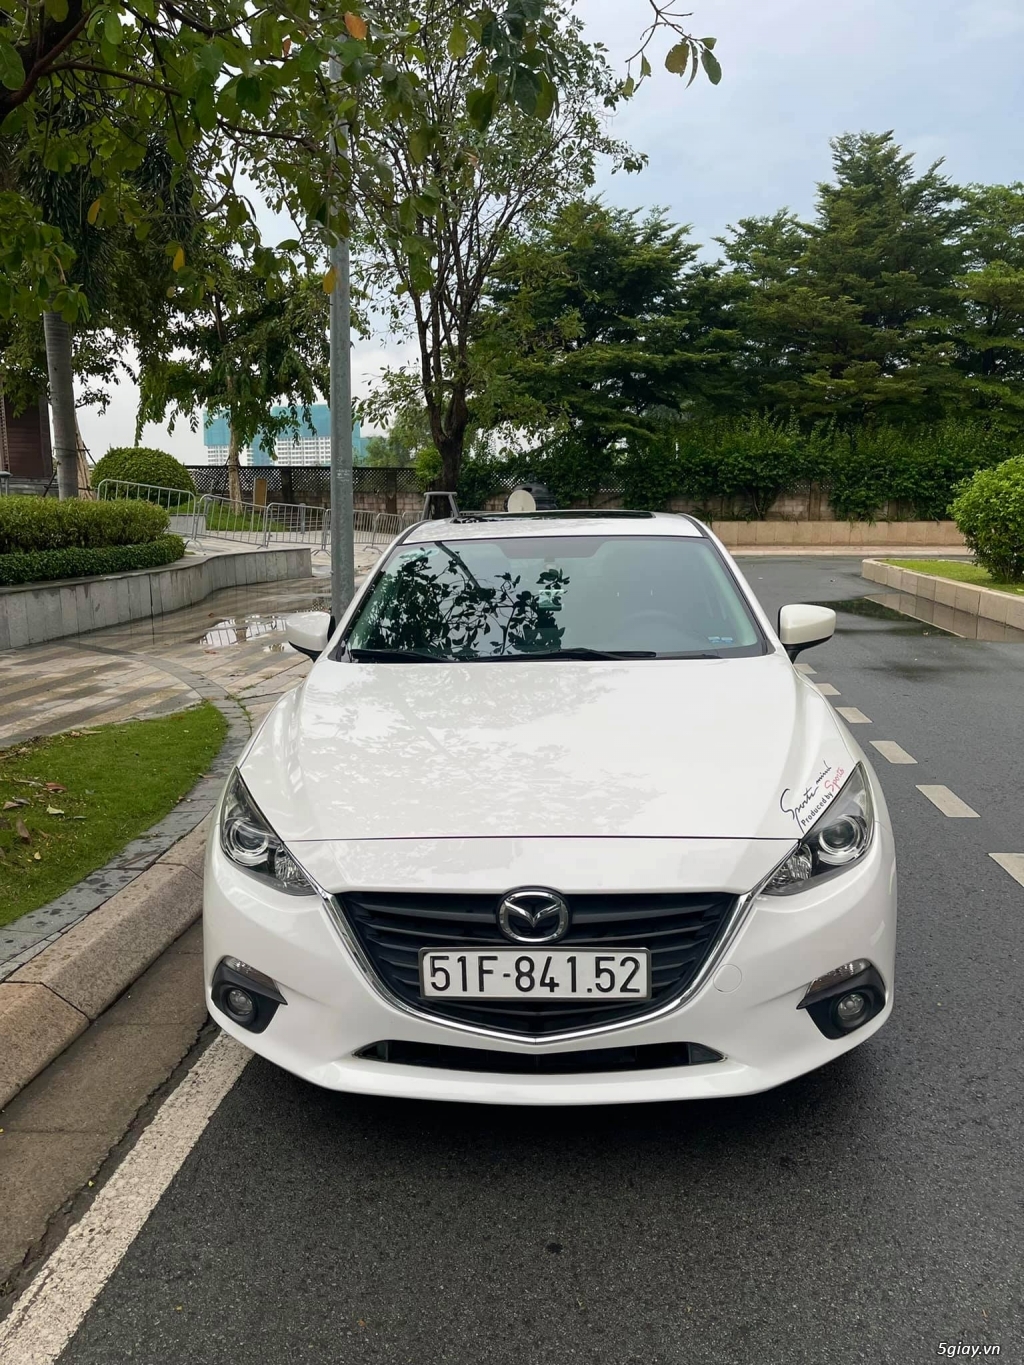 Mazda 3 Sx 2016 Trắng Biển Sài Gòn - 4